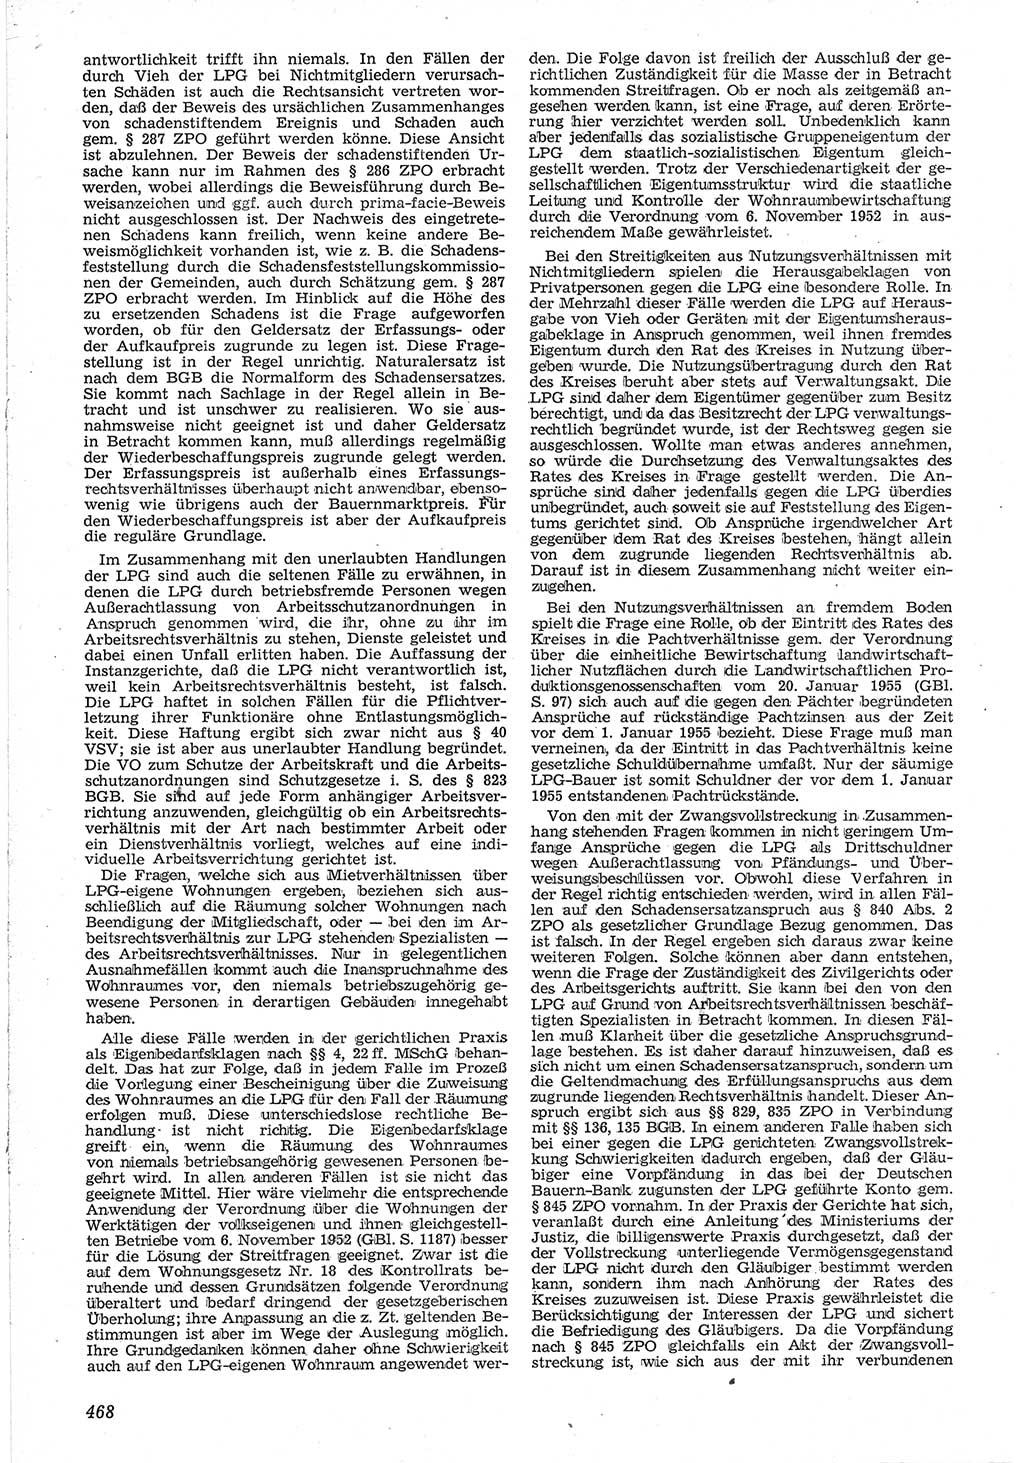 Neue Justiz (NJ), Zeitschrift für Recht und Rechtswissenschaft [Deutsche Demokratische Republik (DDR)], 12. Jahrgang 1958, Seite 468 (NJ DDR 1958, S. 468)